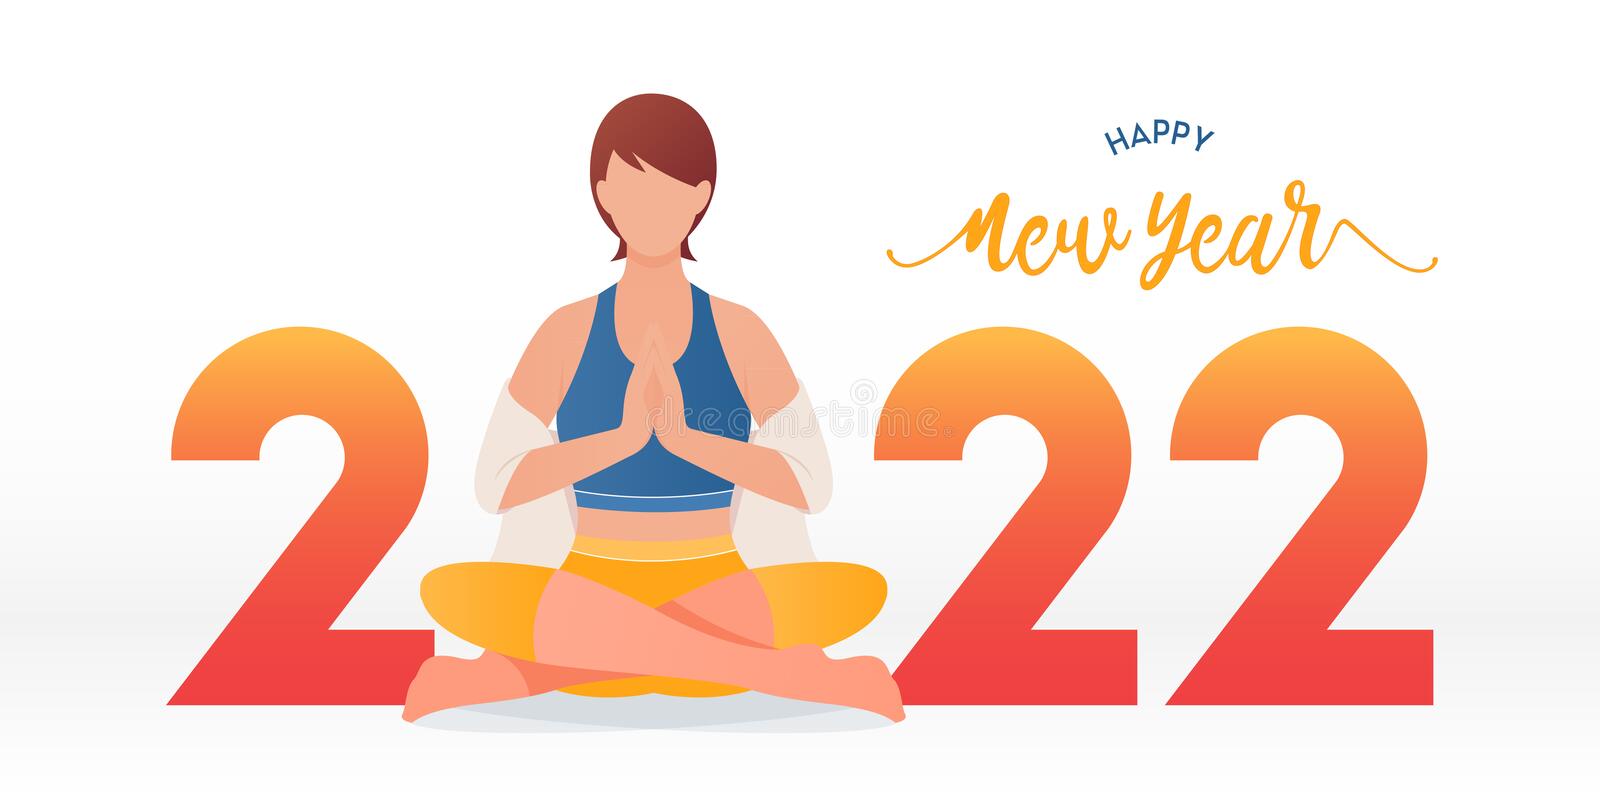 joyeux-bannière-du-nouvel-avec-pose-de-yoga-ou-posture-d-asana-année-bonne-santé-modèle-design-pour-la-nouvelle-décoration-233754747.jpg